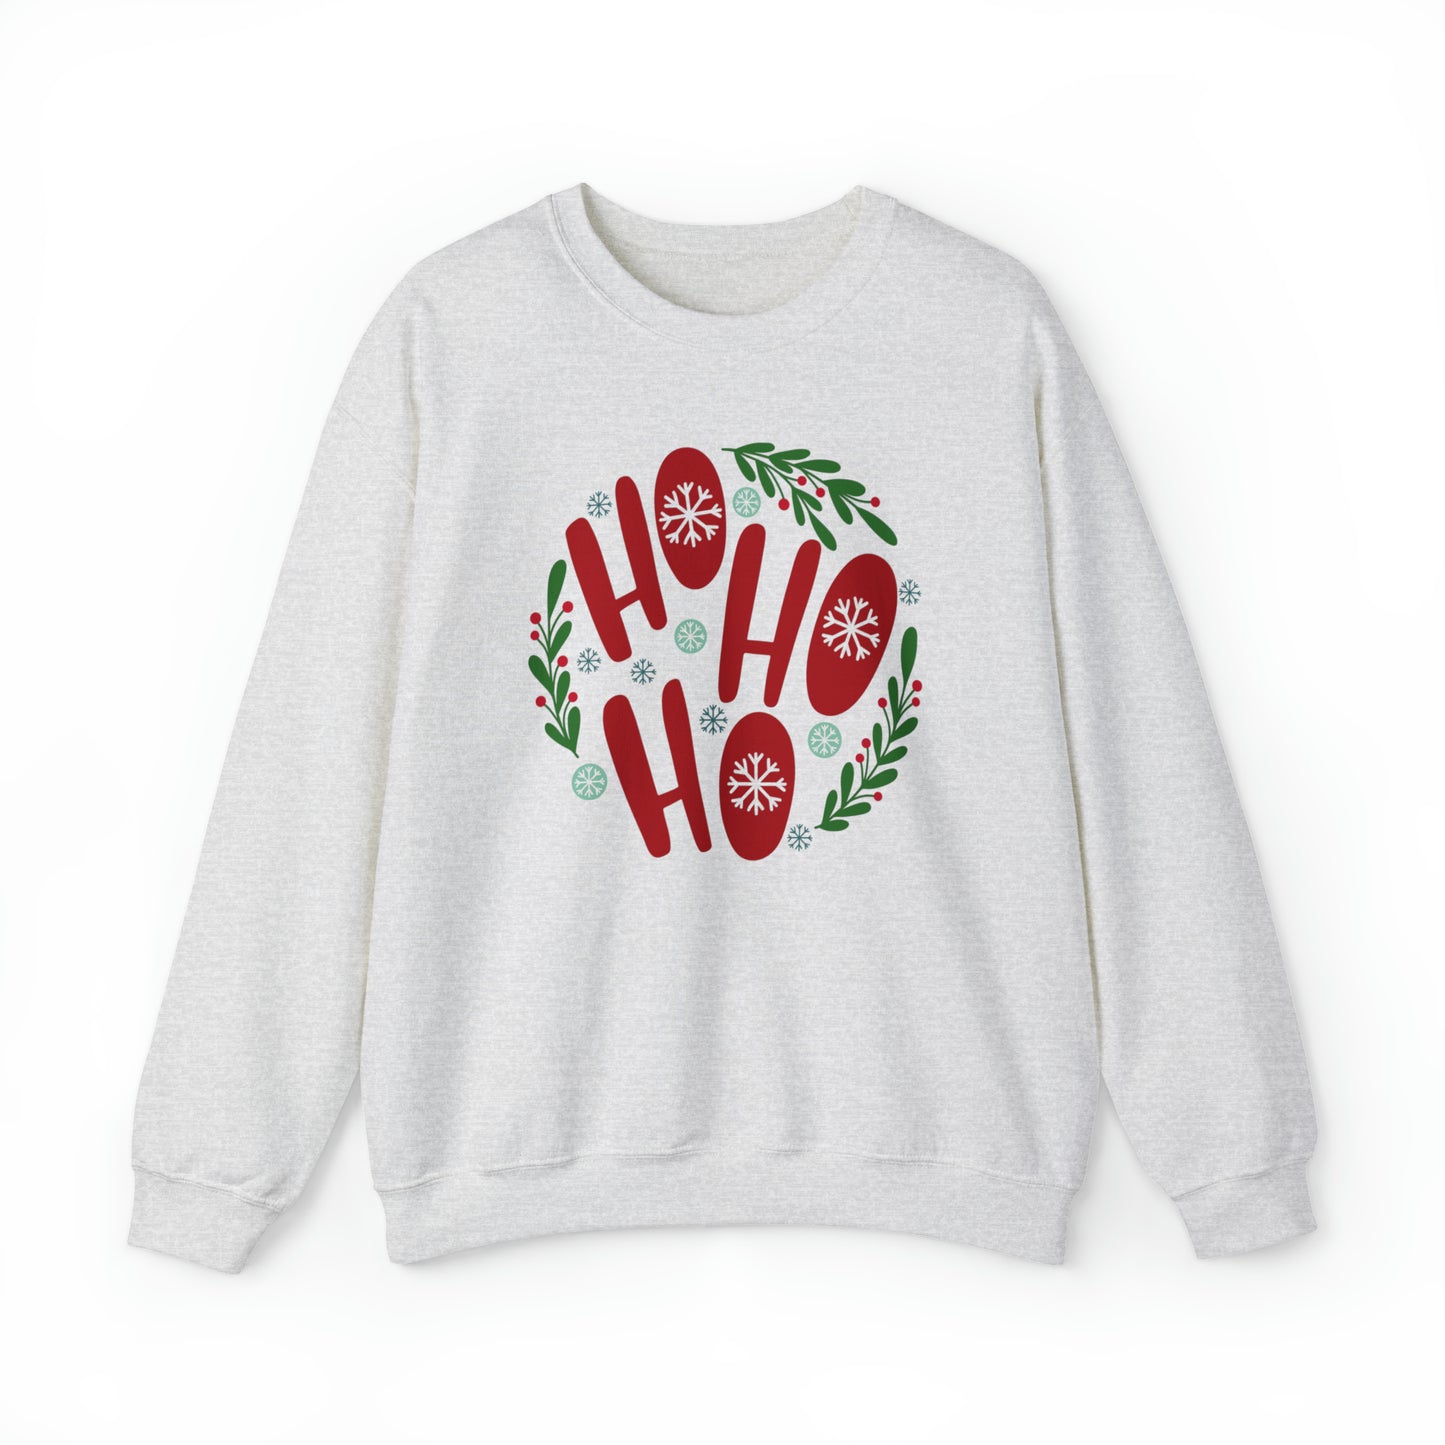 Santa Ho Ho Ho Sweatshirt, Women Christmas Holiday Shirt, Women Christmas Hoodie, Mistletoe Sweatshirt, Christmas Gift for Mom